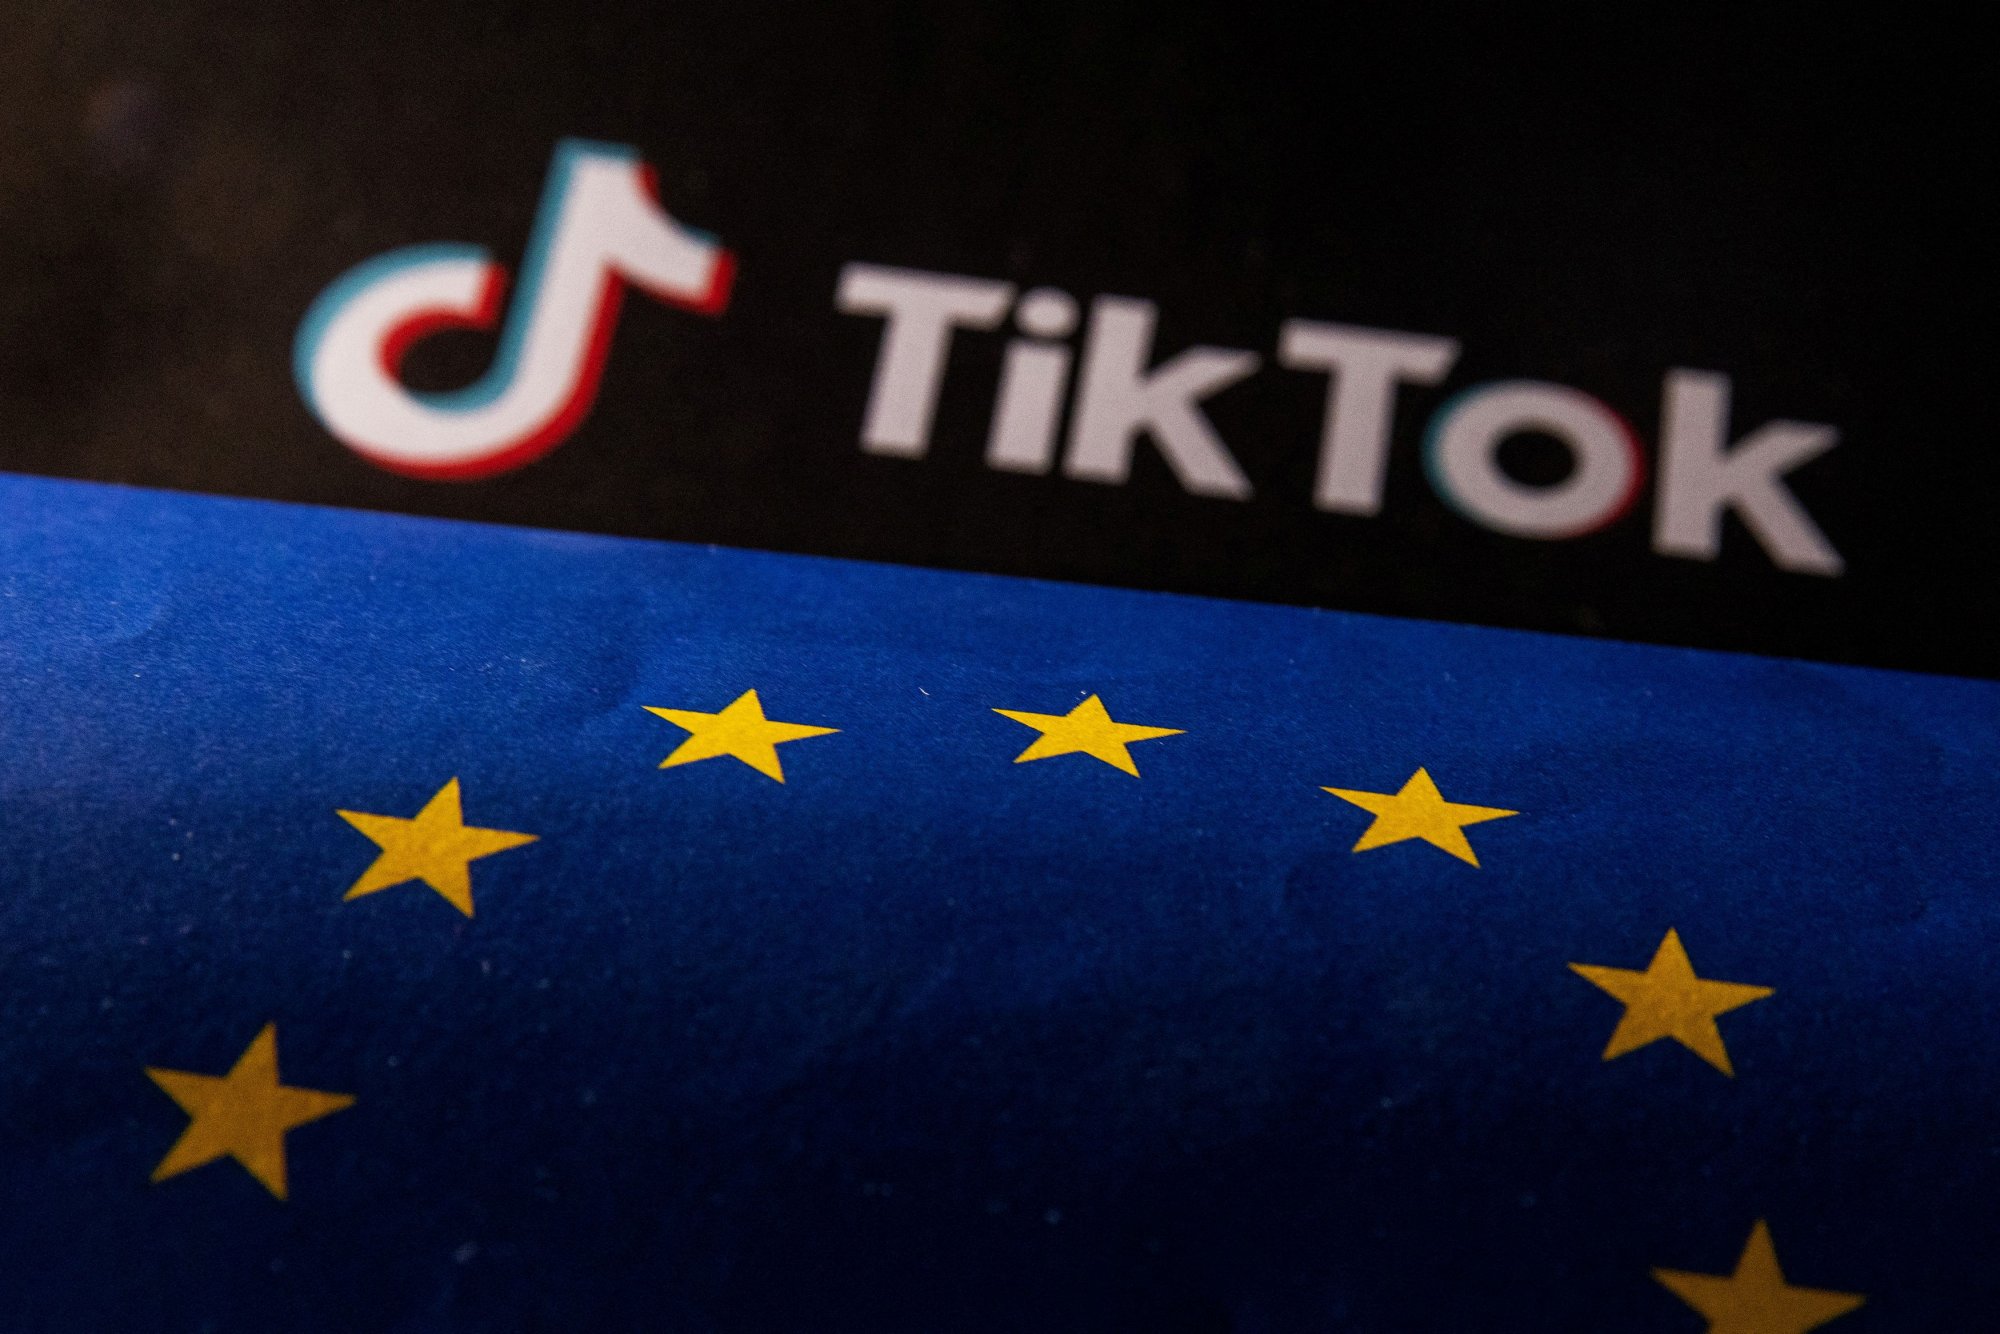 TikTok: Κοινό μέτωπο με Meta ενάντια στη νέα νομοθεσία της ΕΕ για της ψηφιακές αγορές